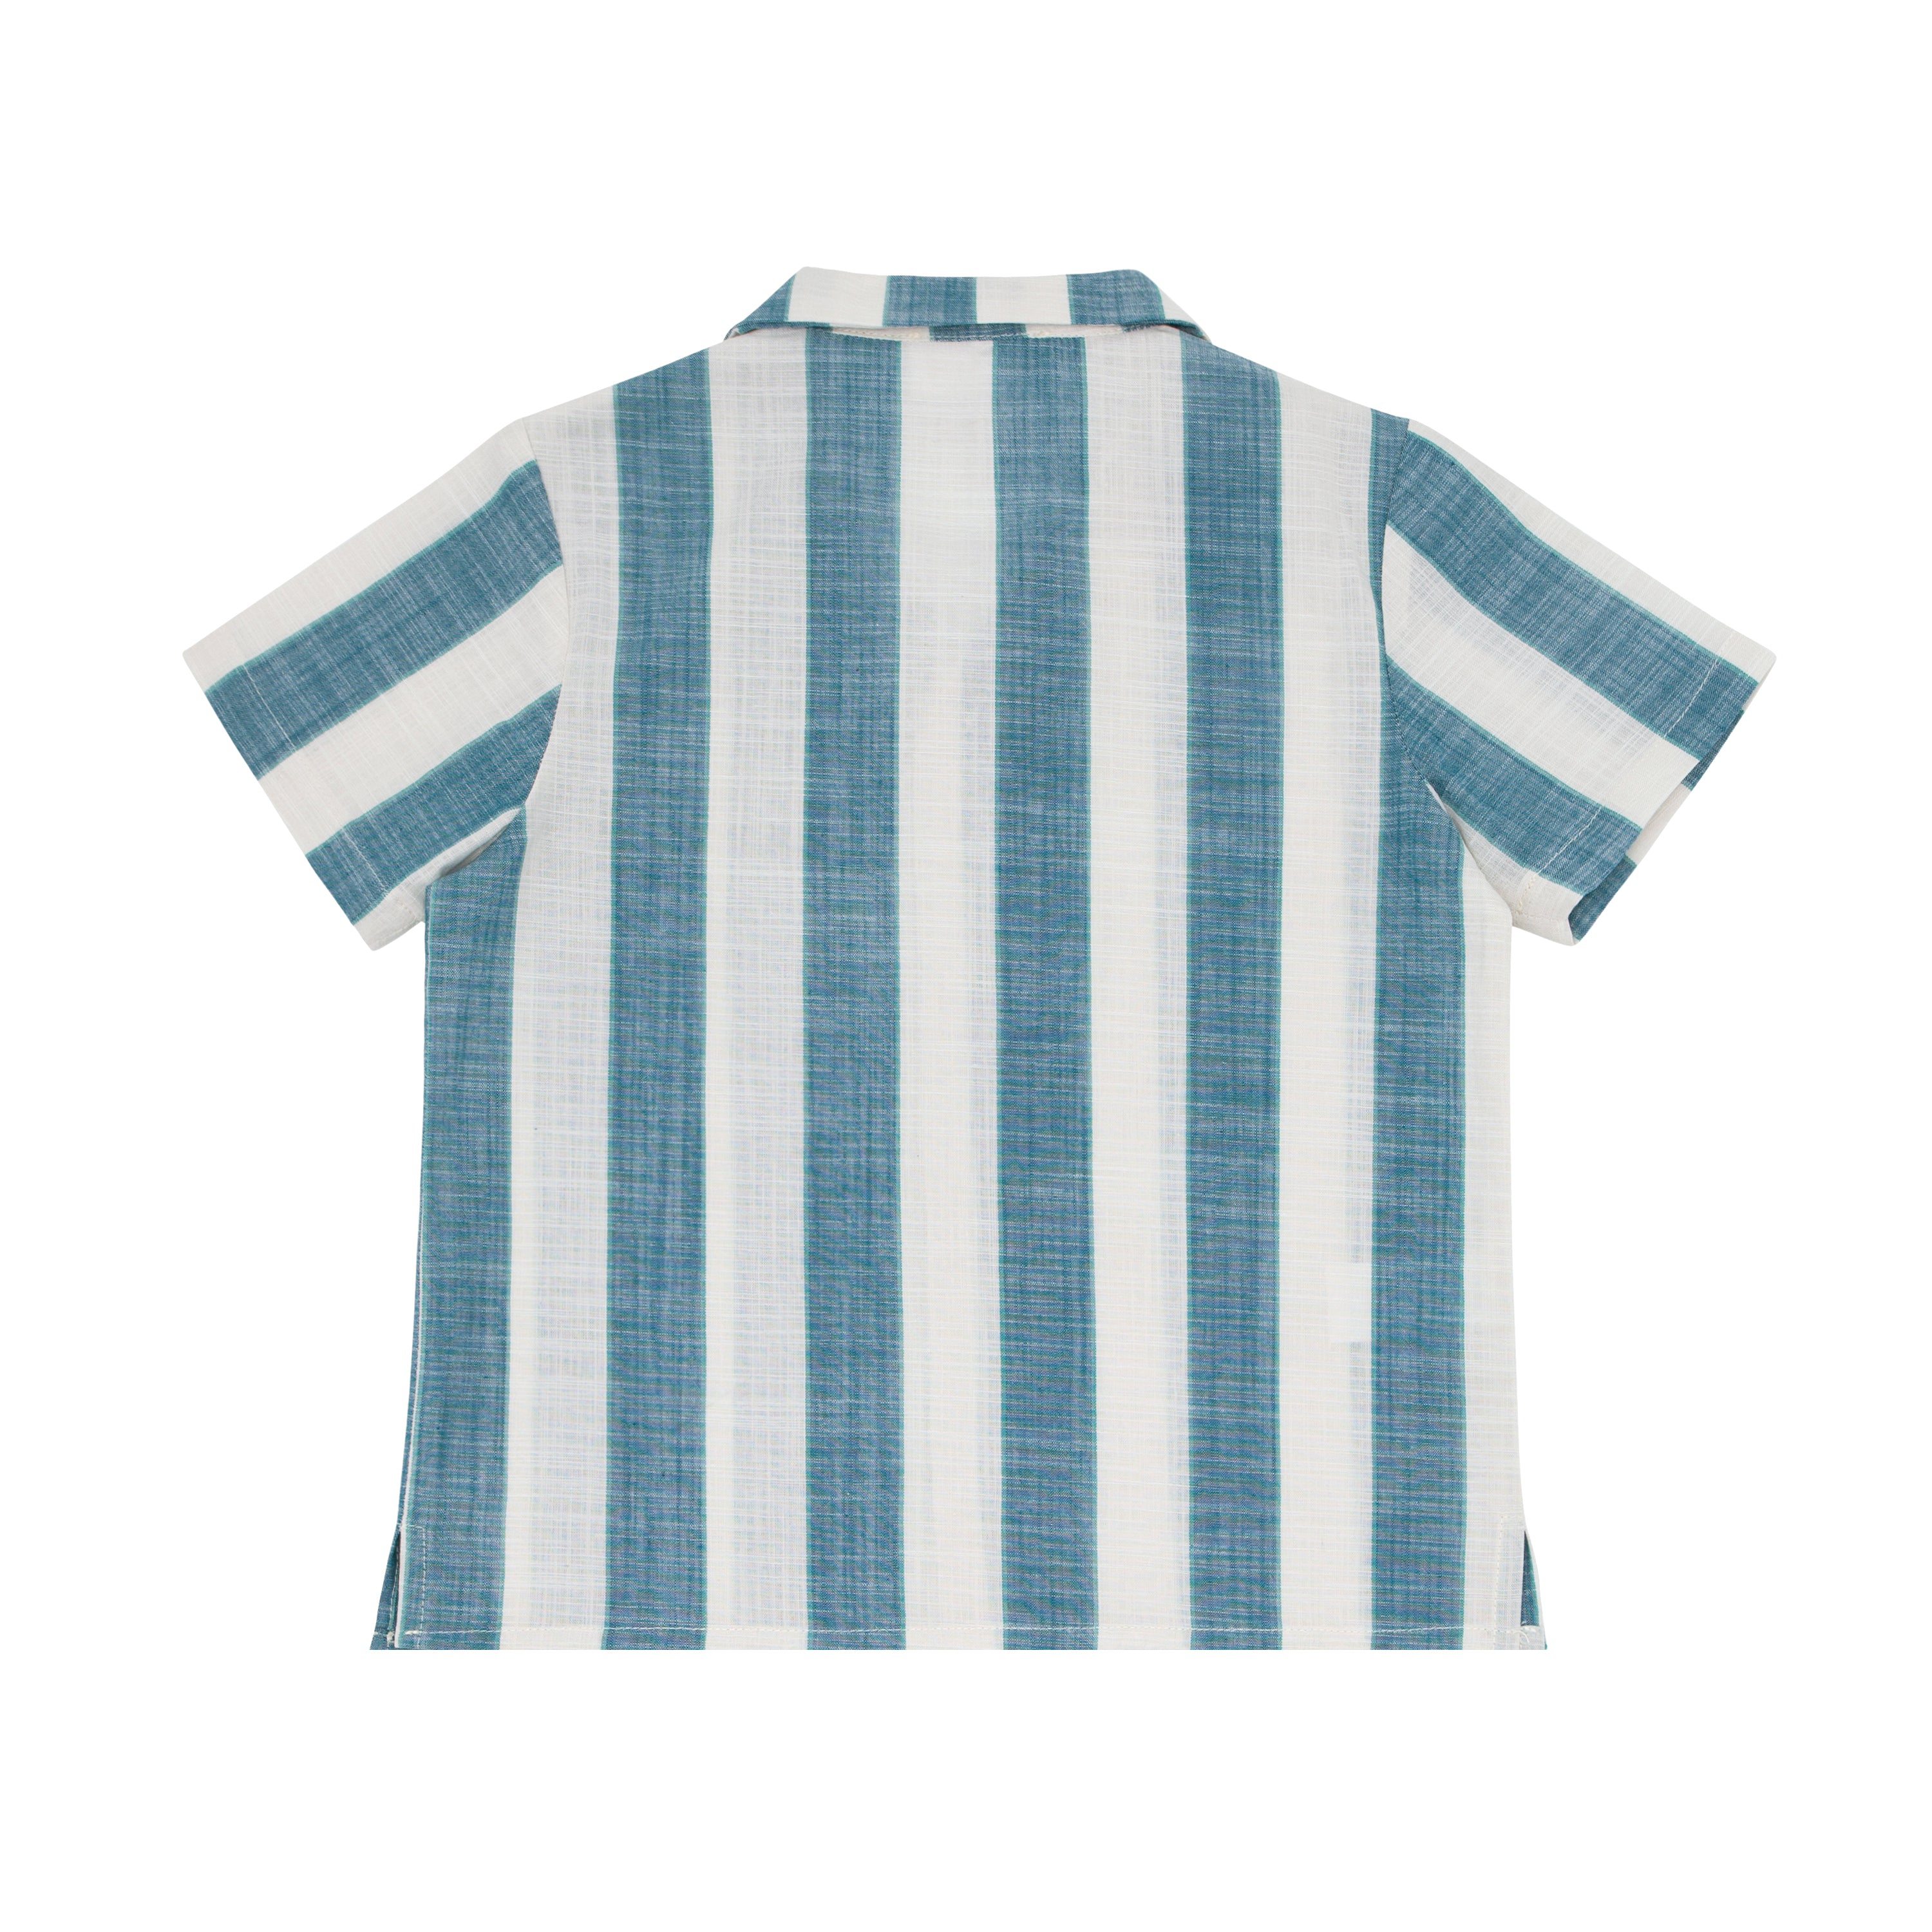 shopmartzpr Old Money Striped Blue Linen Shirt S